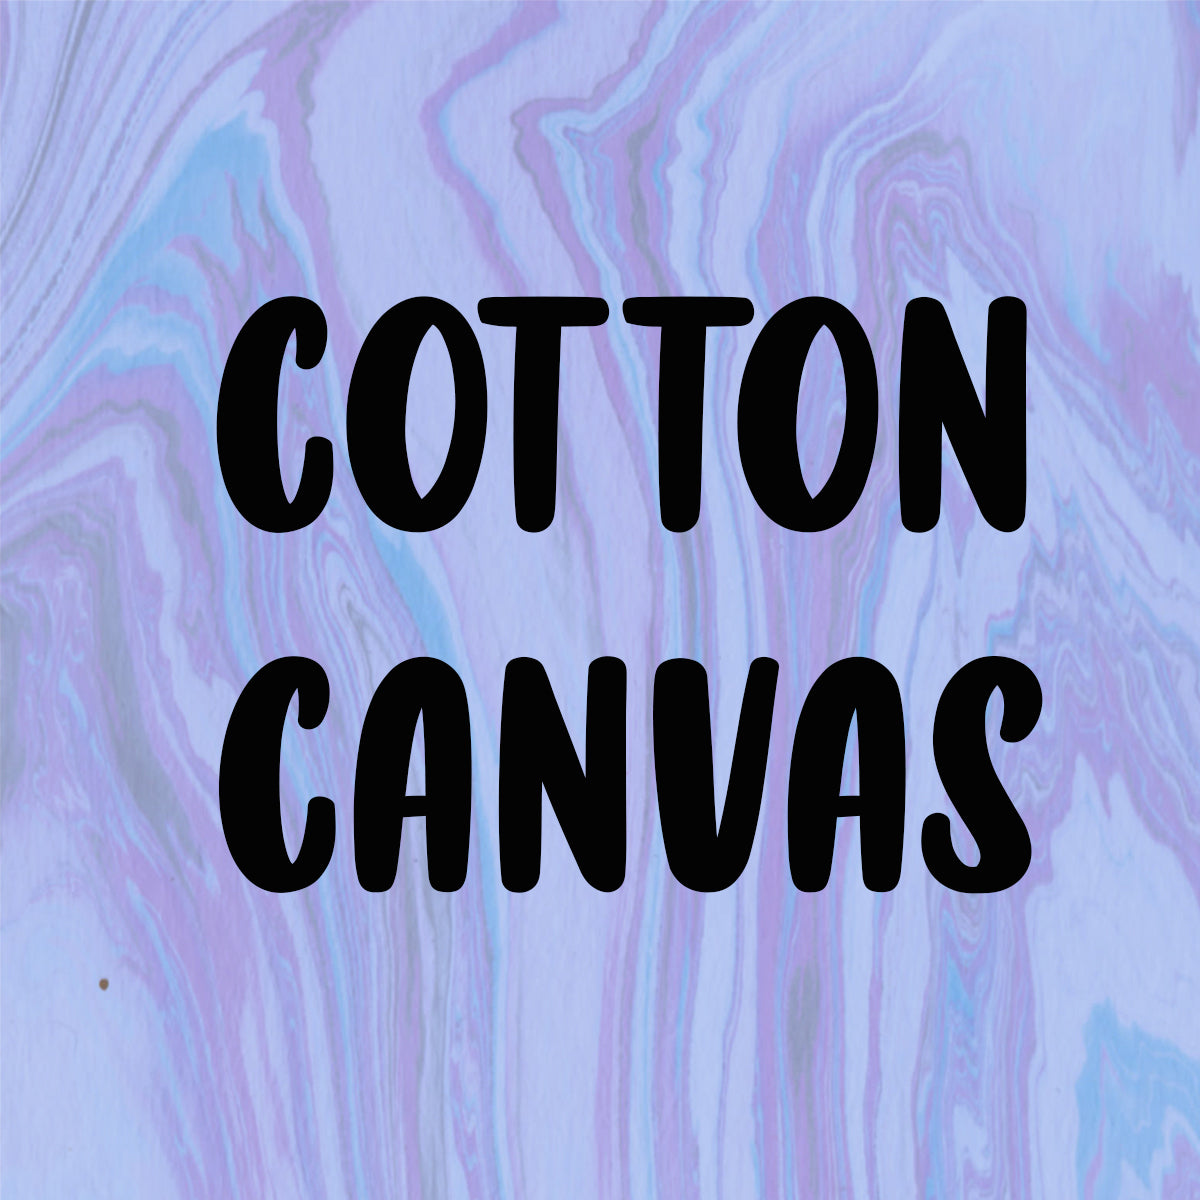 COTTON CANVAS *COTTONS*